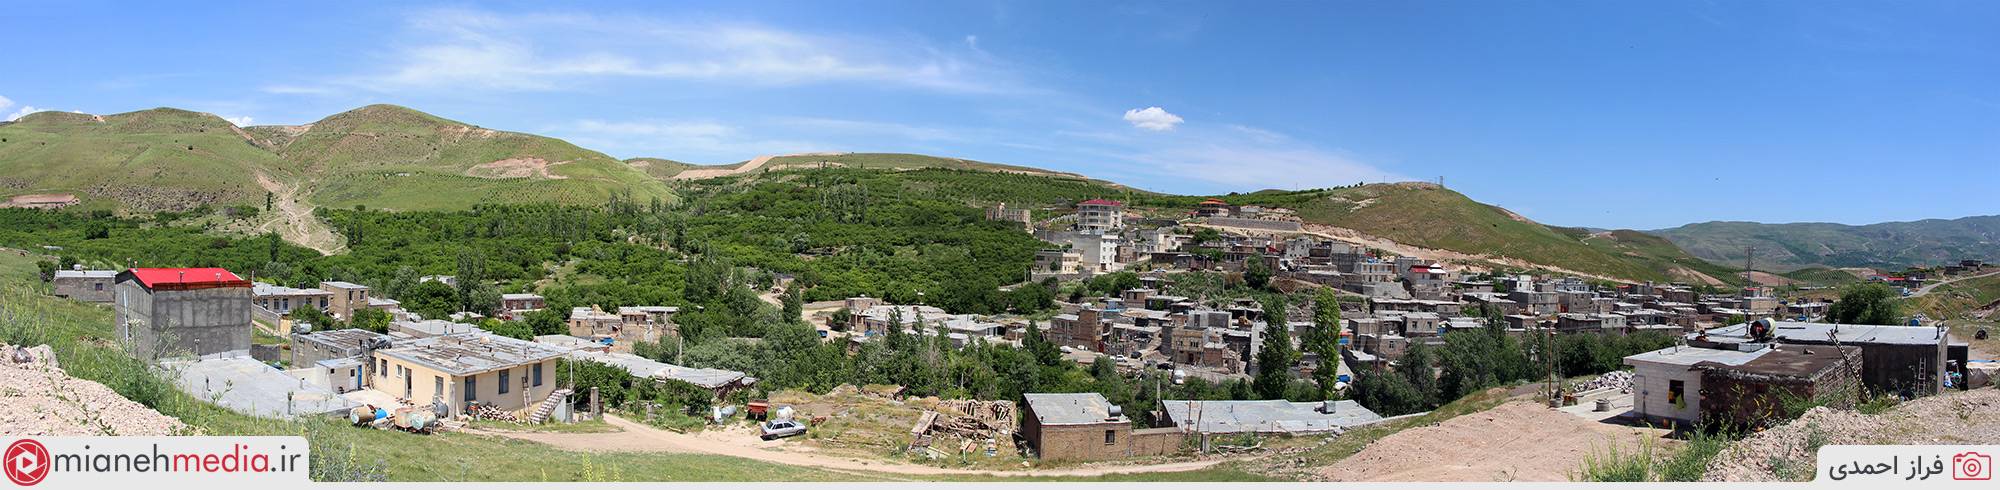 روستای توشمانلو (توشمانلی)